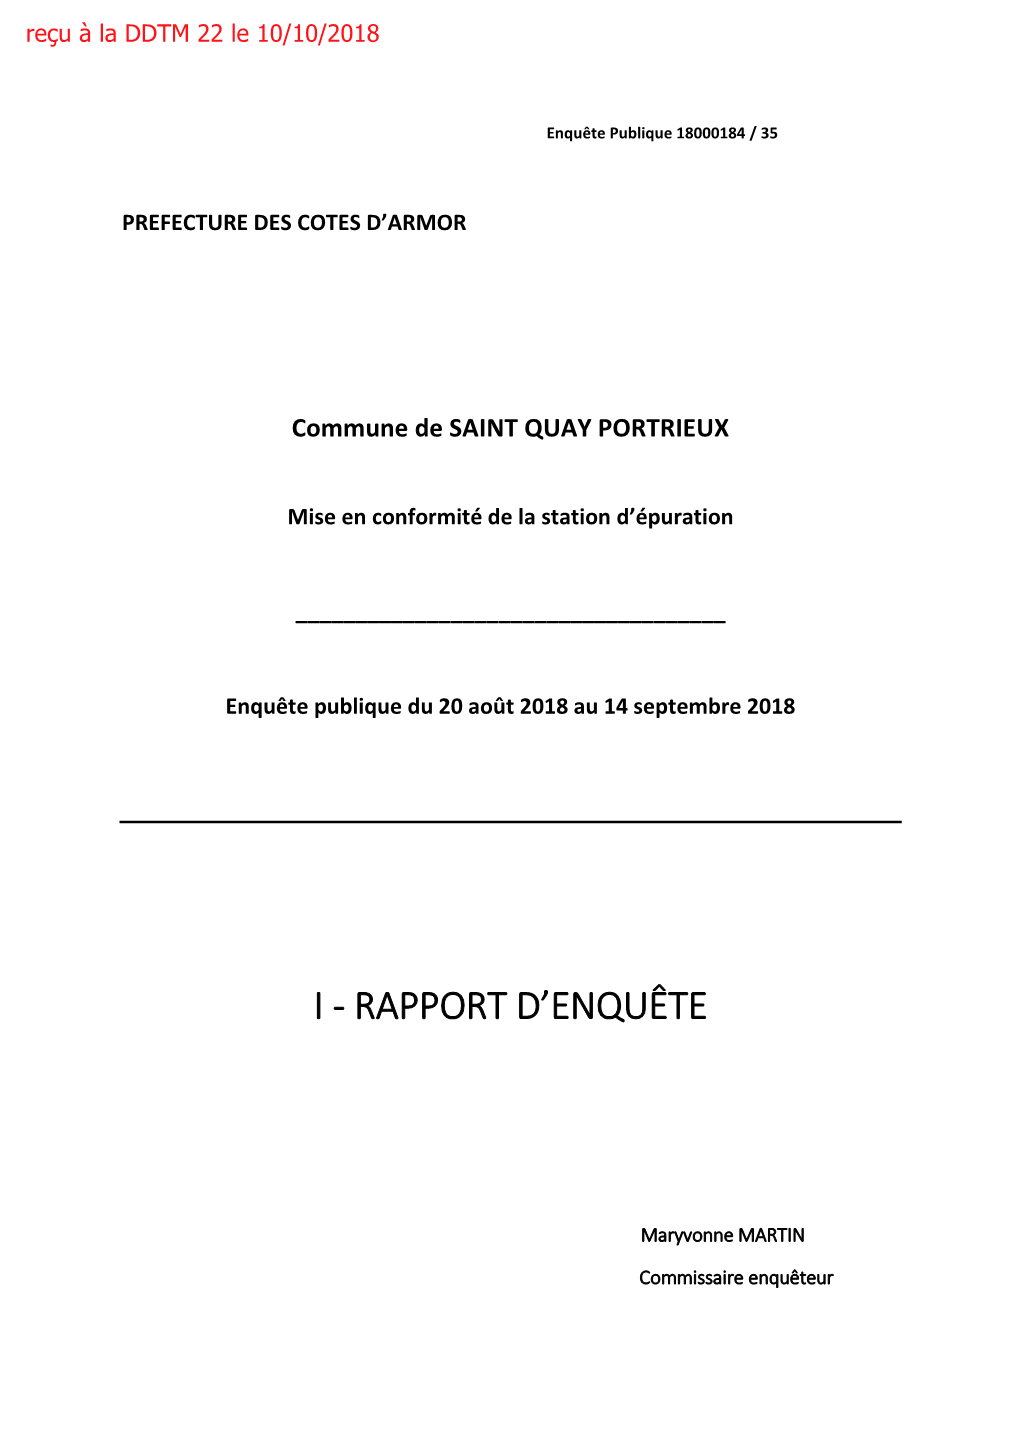 SAINT-QUAY-PORTRIEUX Rapport D'enquête